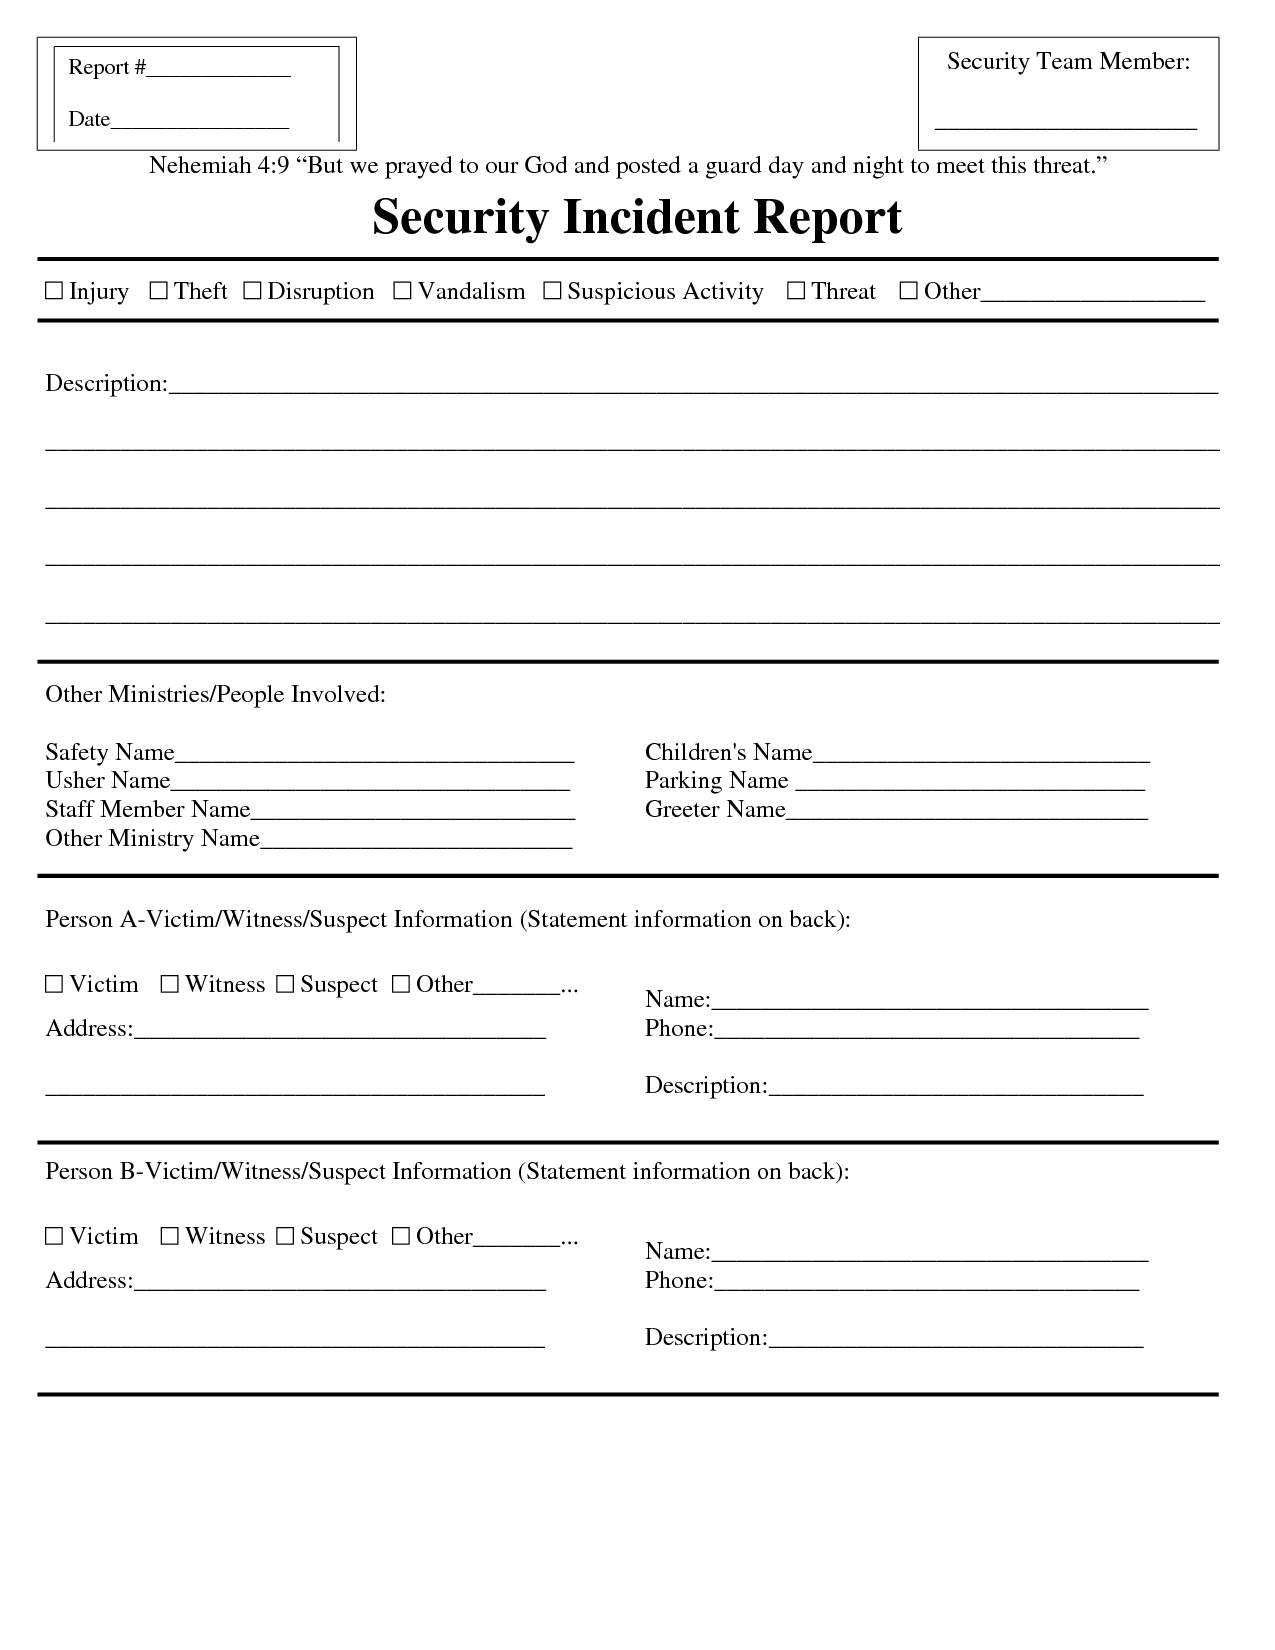 Premium Blank Security Incident Report Template Sample Inside Incident Report Template Microsoft